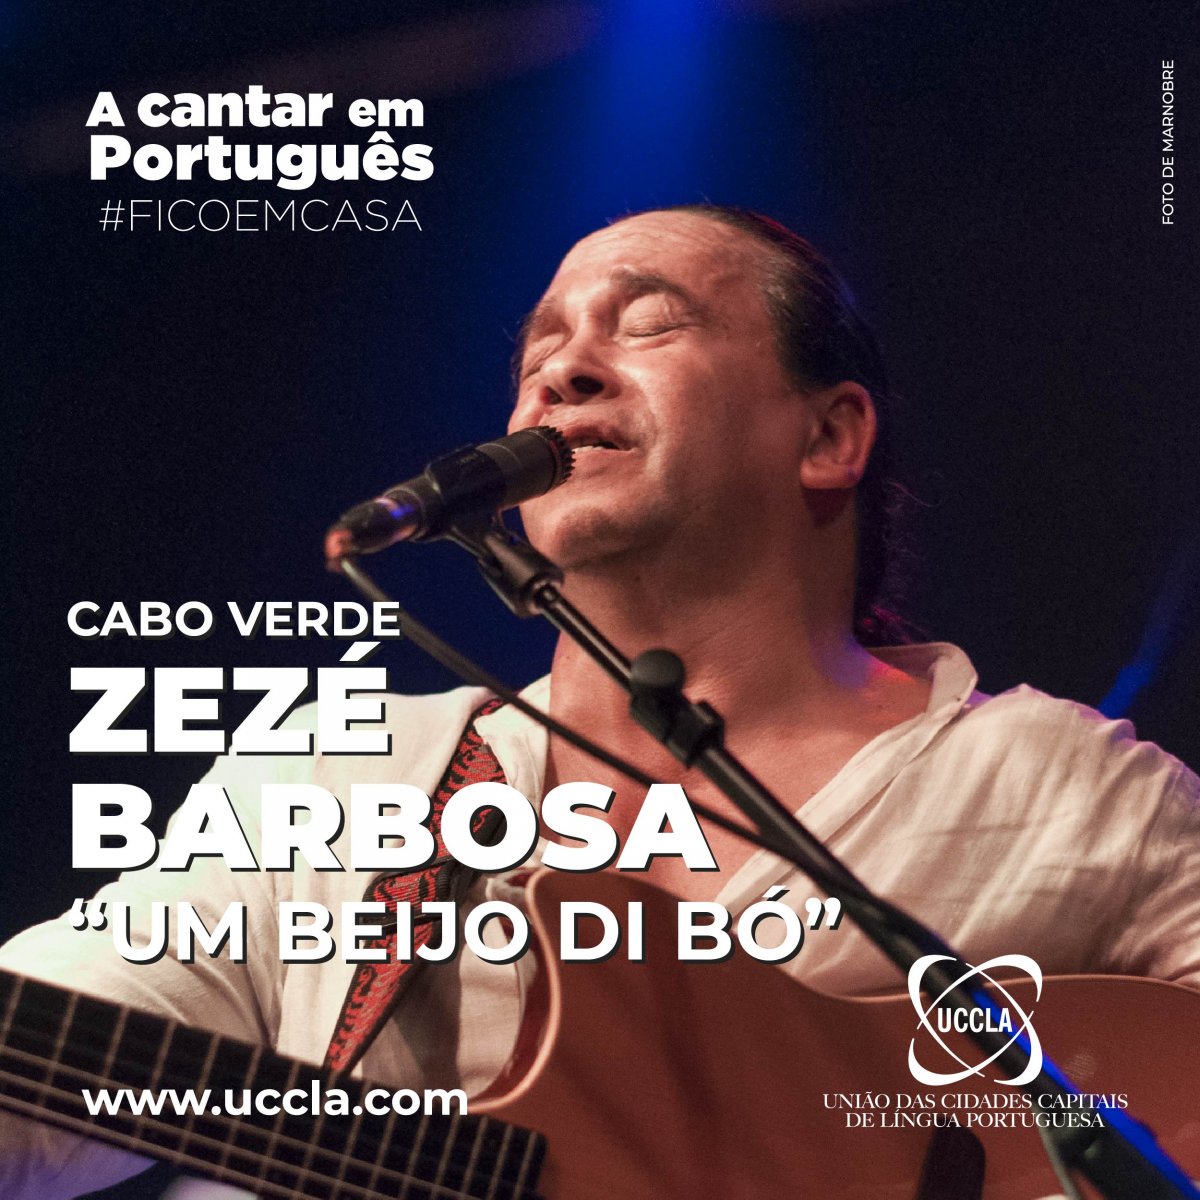 A cantar em portugues-Zeze Barbosa